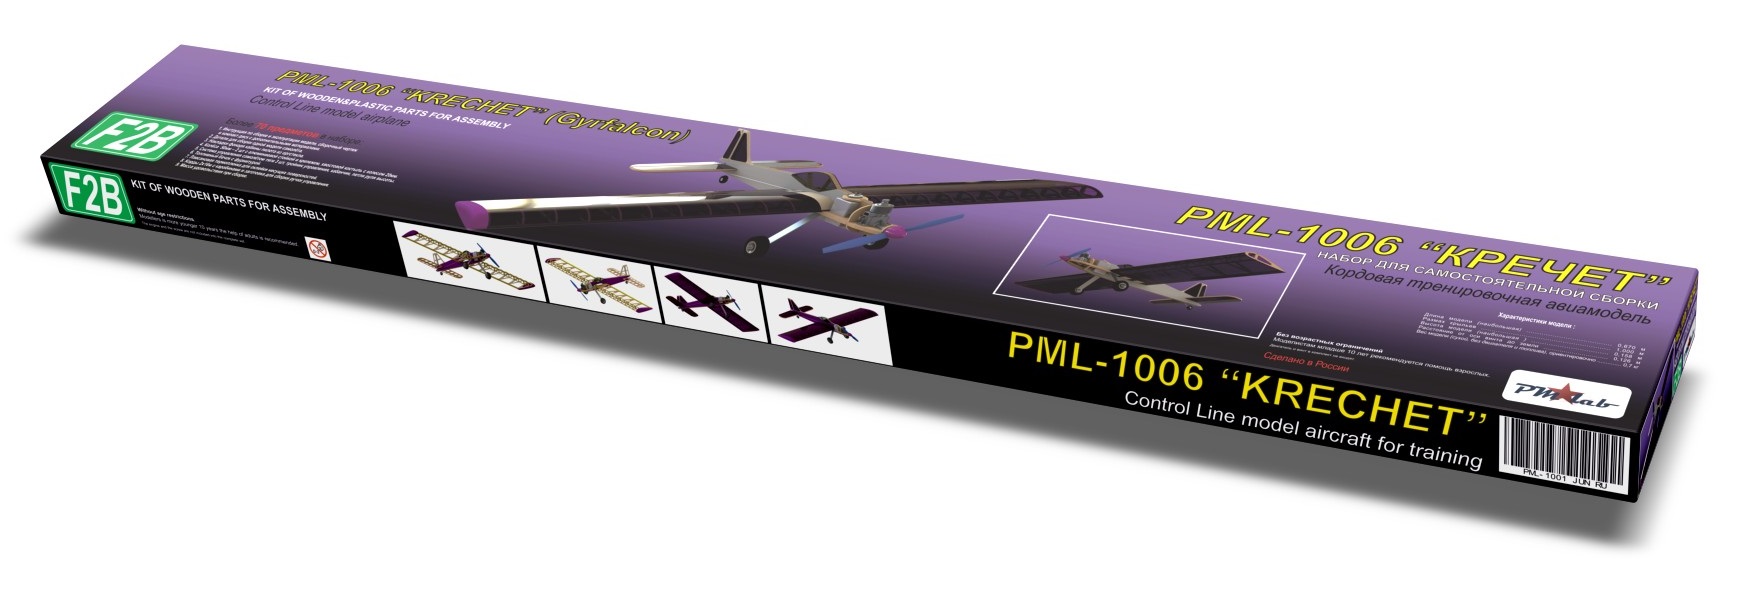 Кордовая модель PML-1006 КРЕЧЕТ